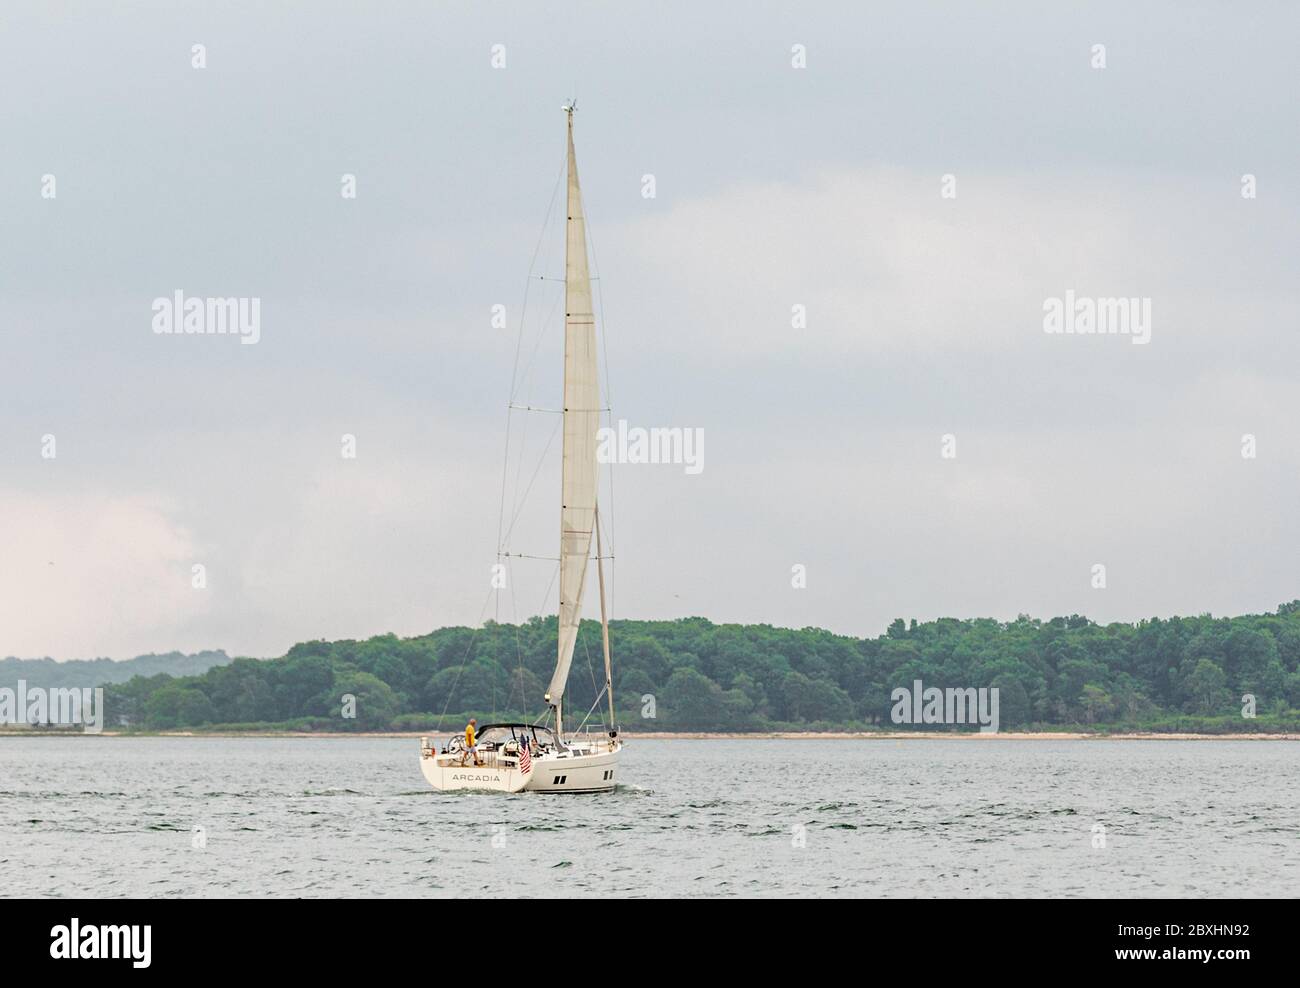 Sailing vessel, Arcadia under sail near Sag Harbor, NY Stock Photo